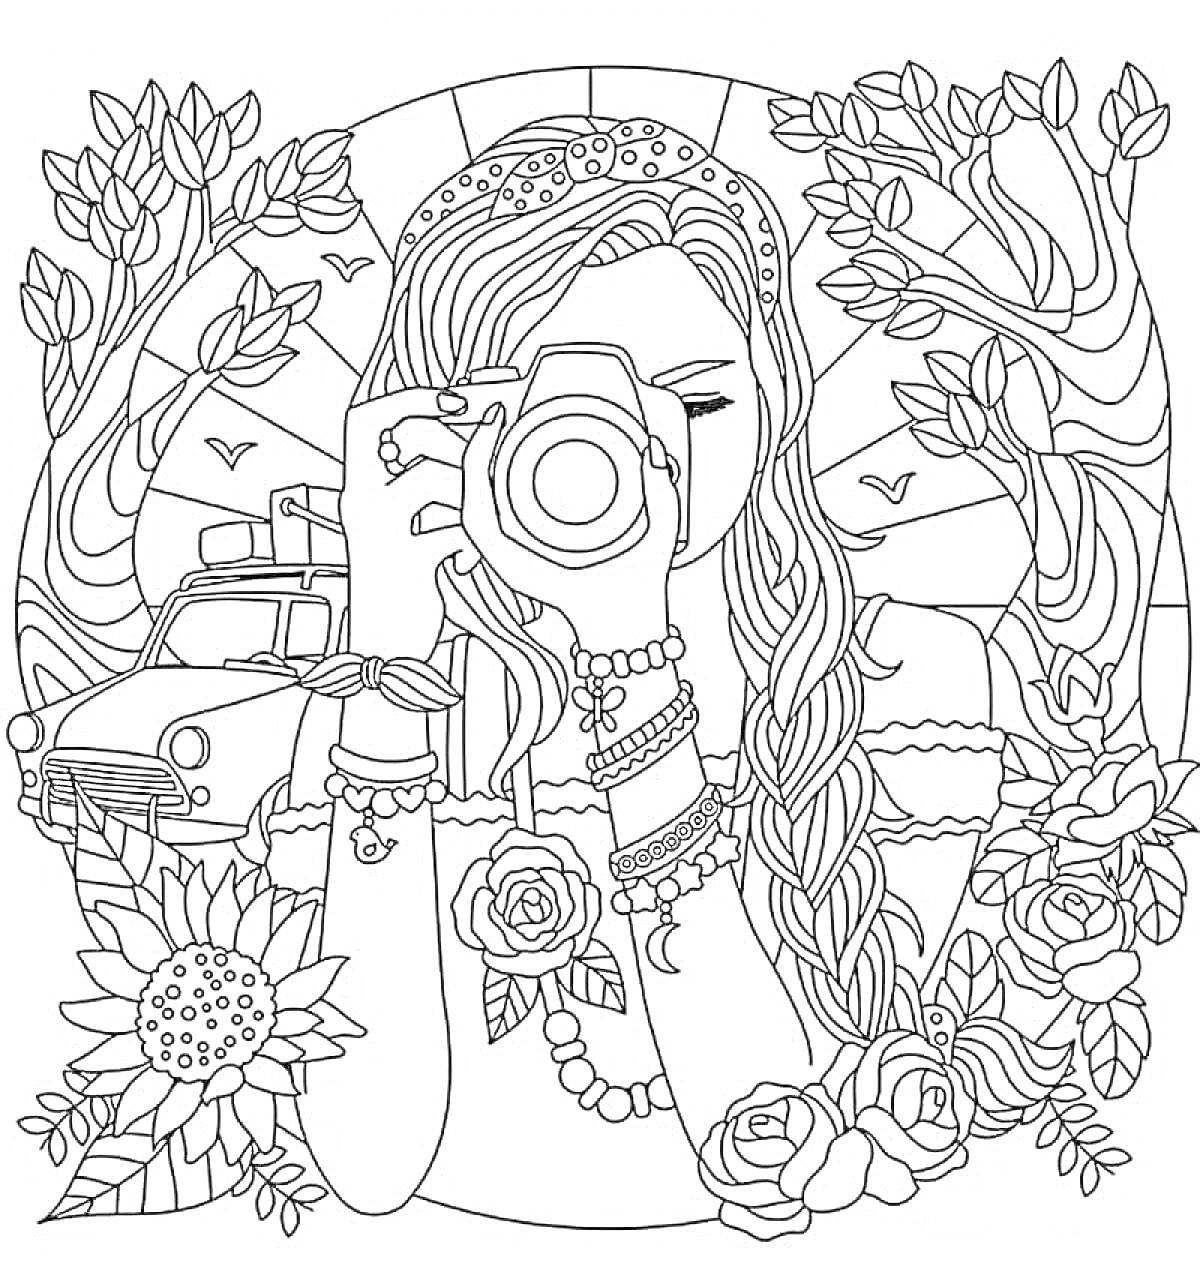 Раскраска Девушка с фотоаппаратом среди деревьев, автомобиля и цветов